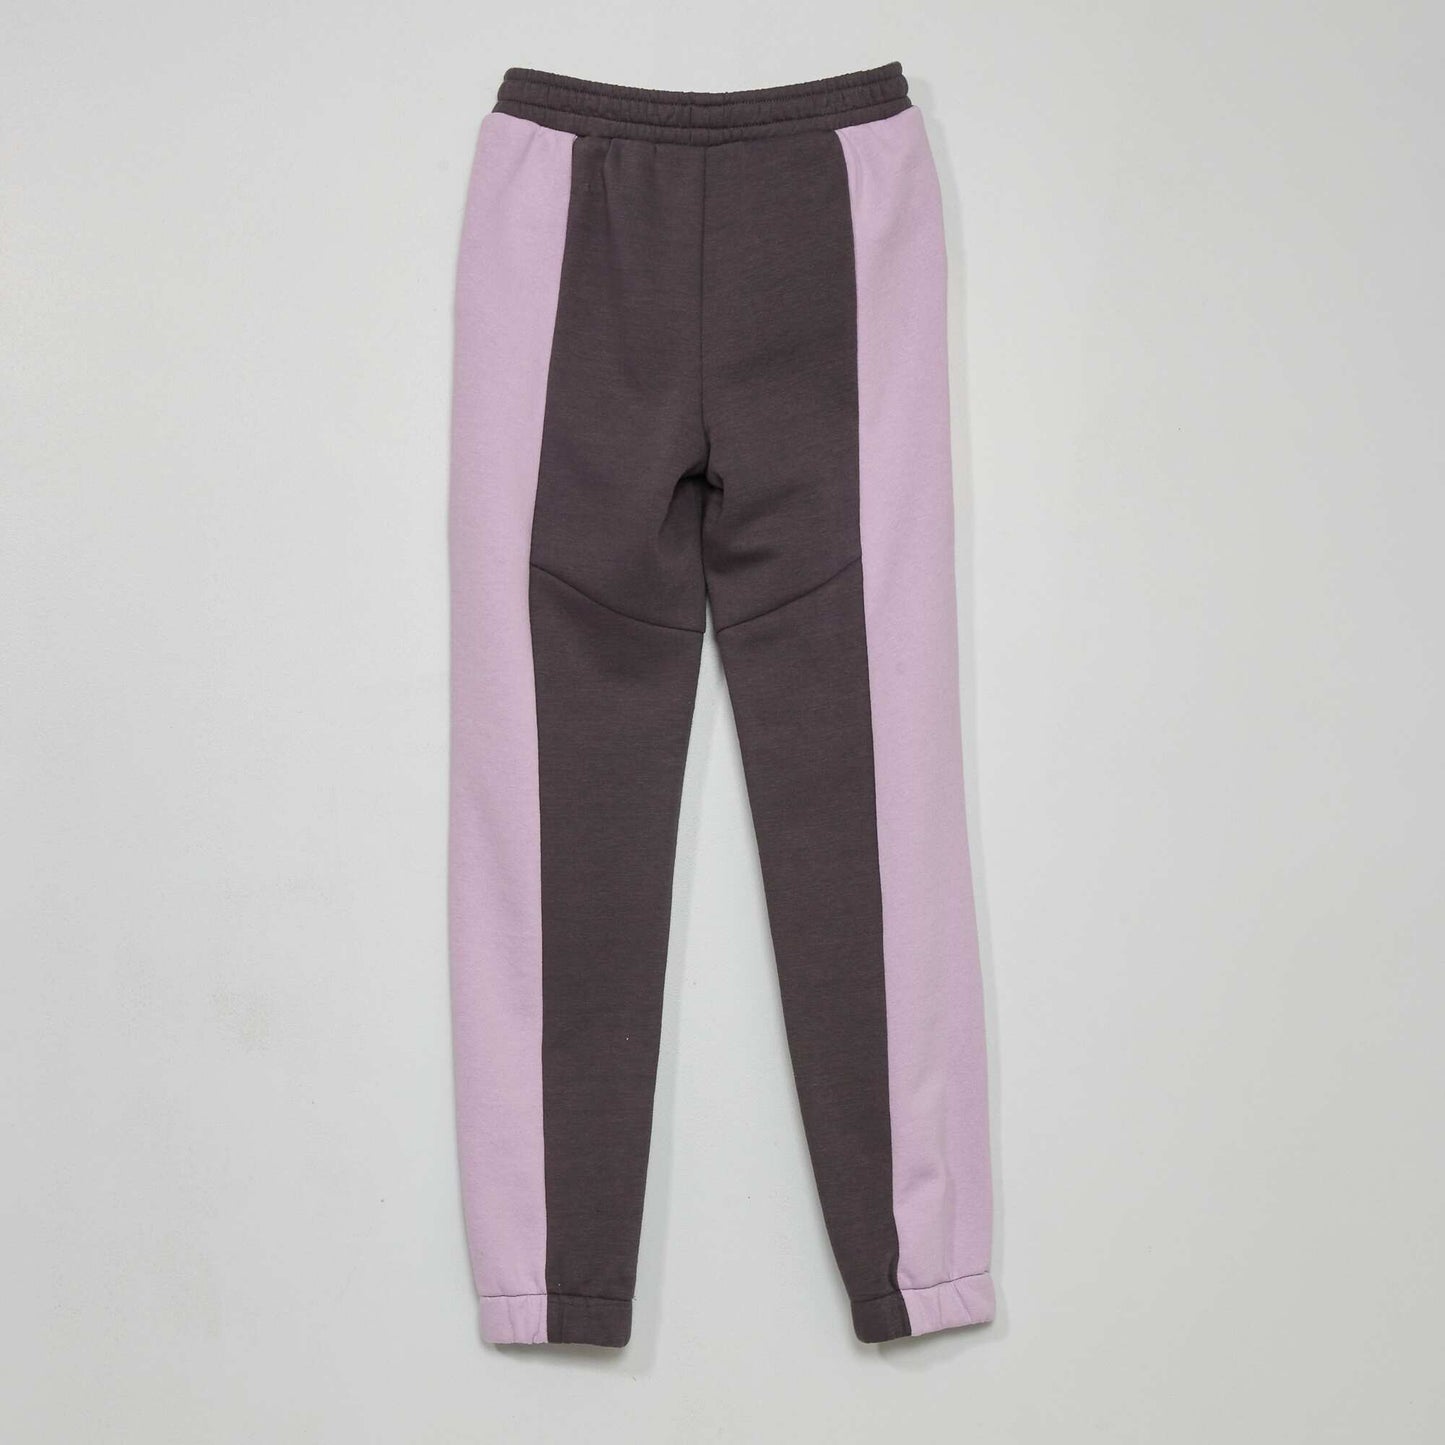 Pantalon jogging colorblock Gris/violet/rose